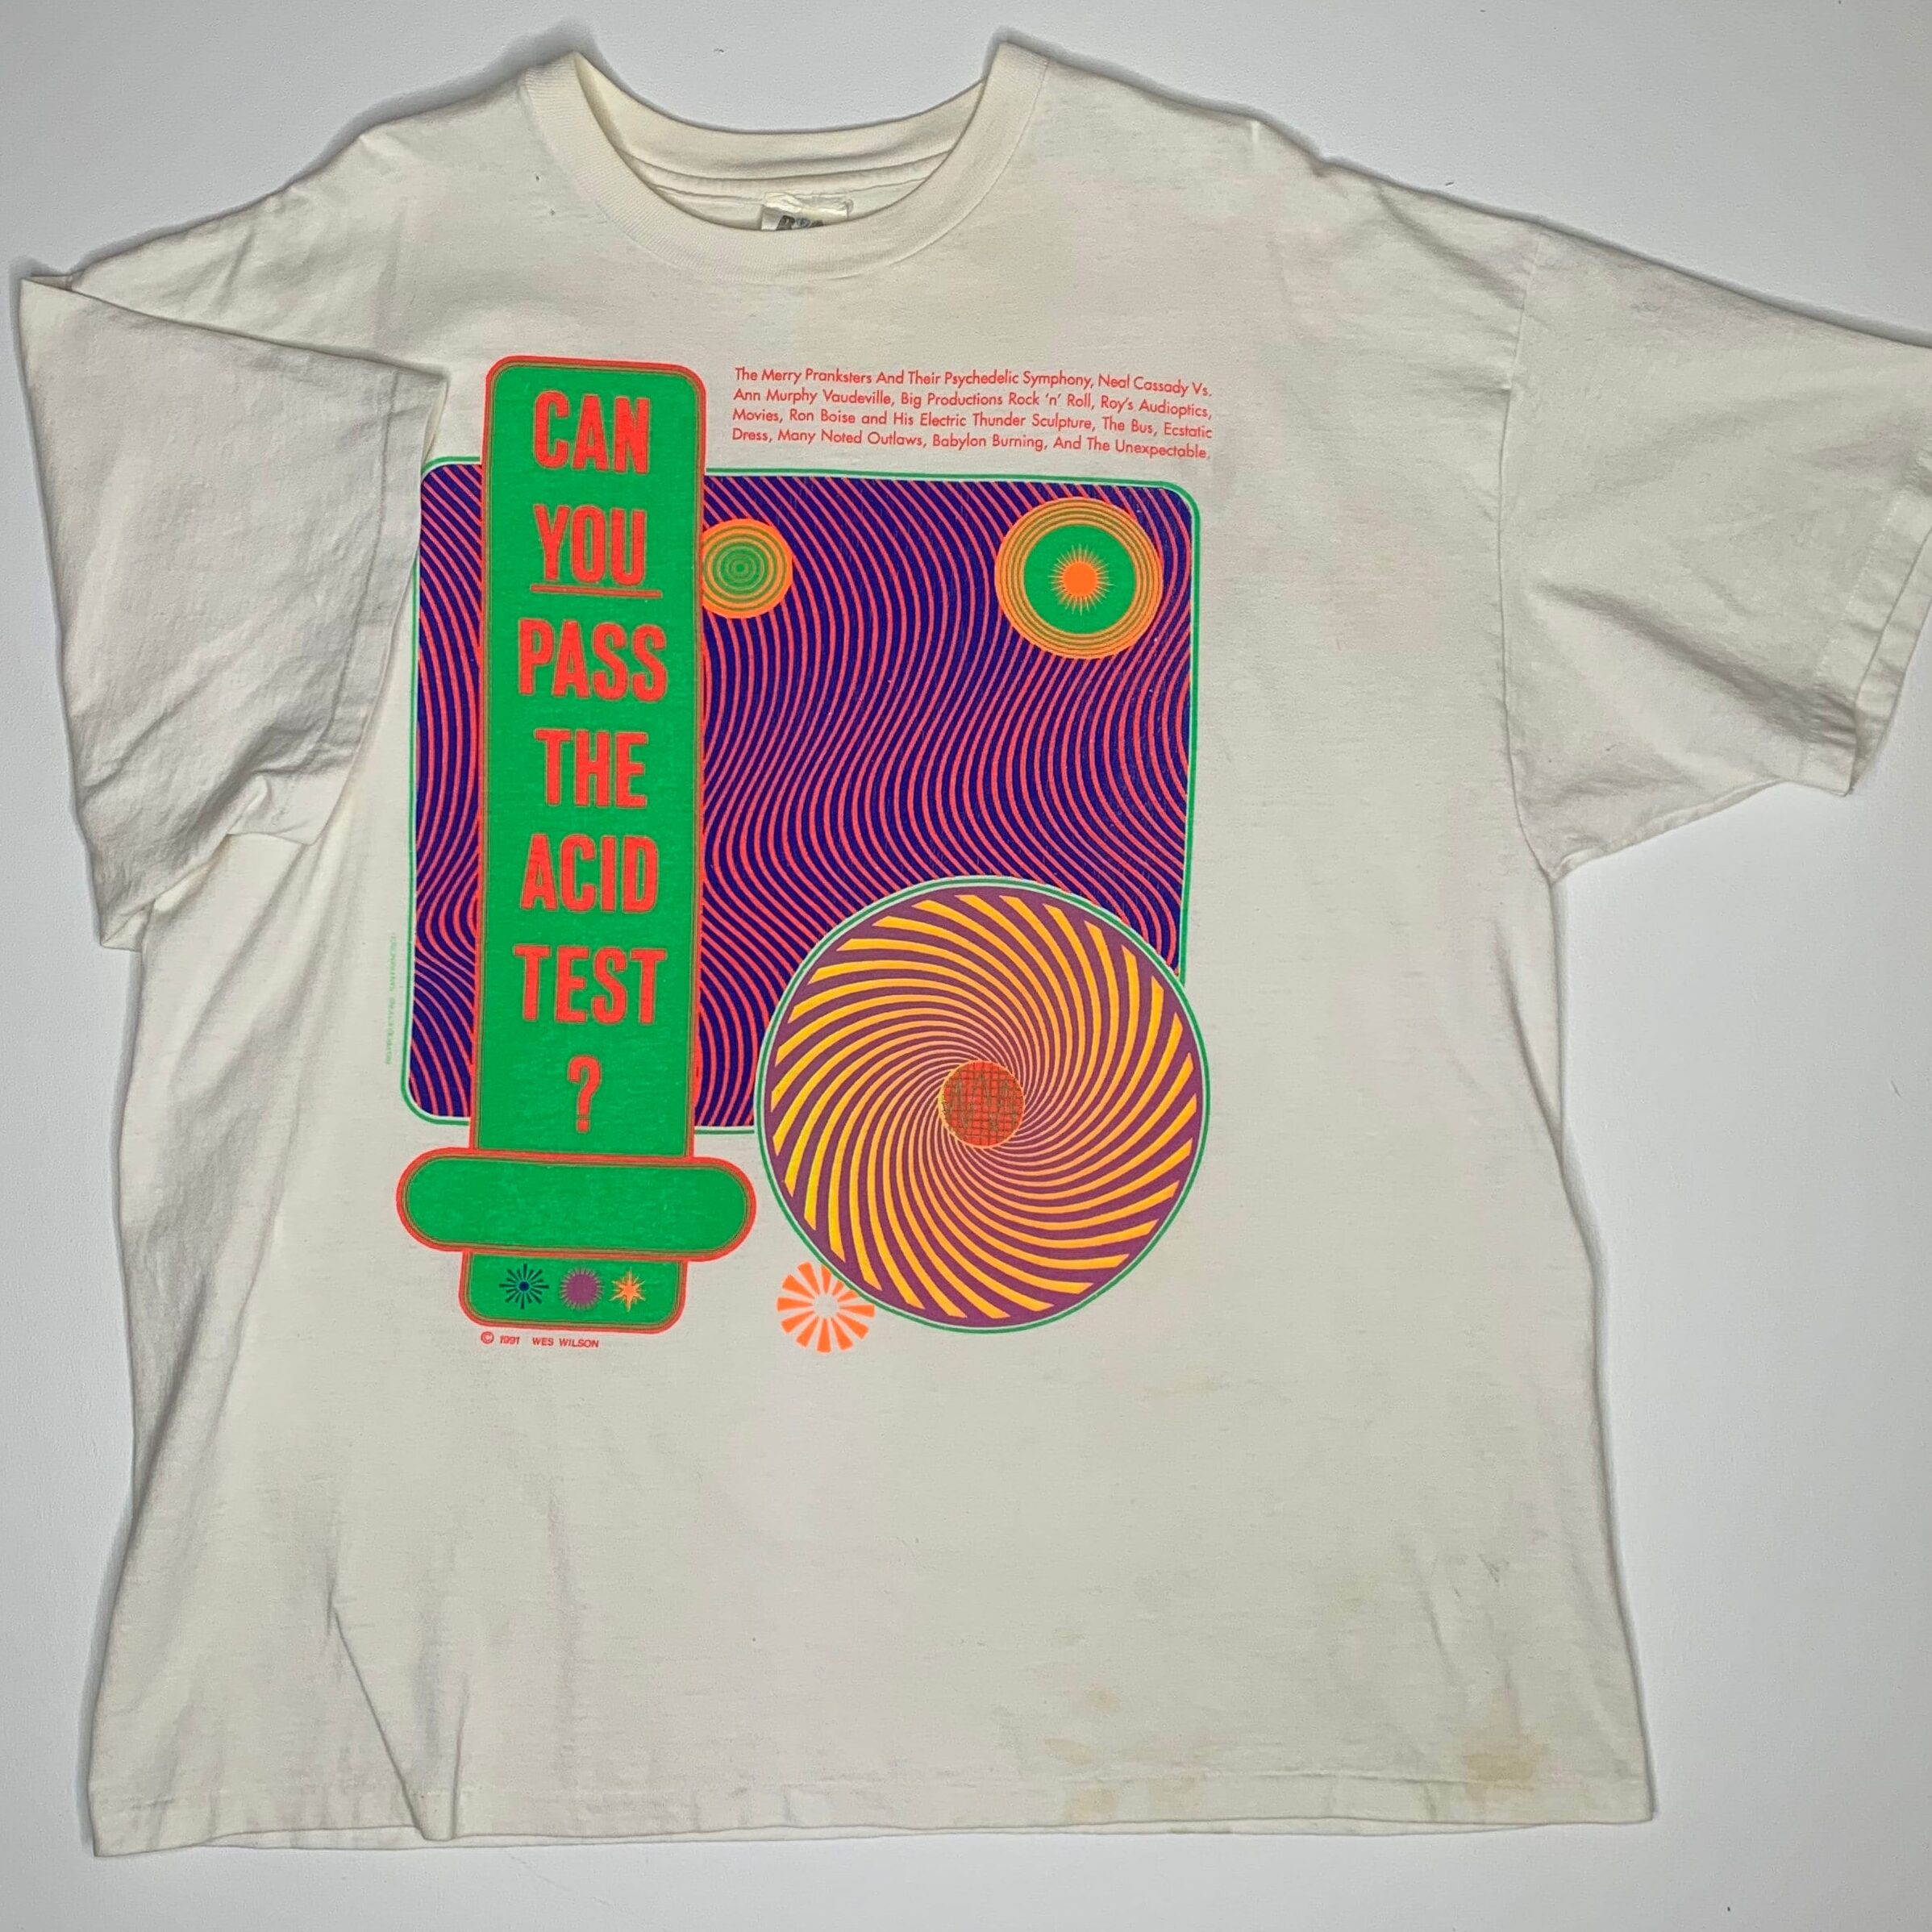 Camiseta vintage de los años 90 ¿Puedes pasar la prueba de ácido?